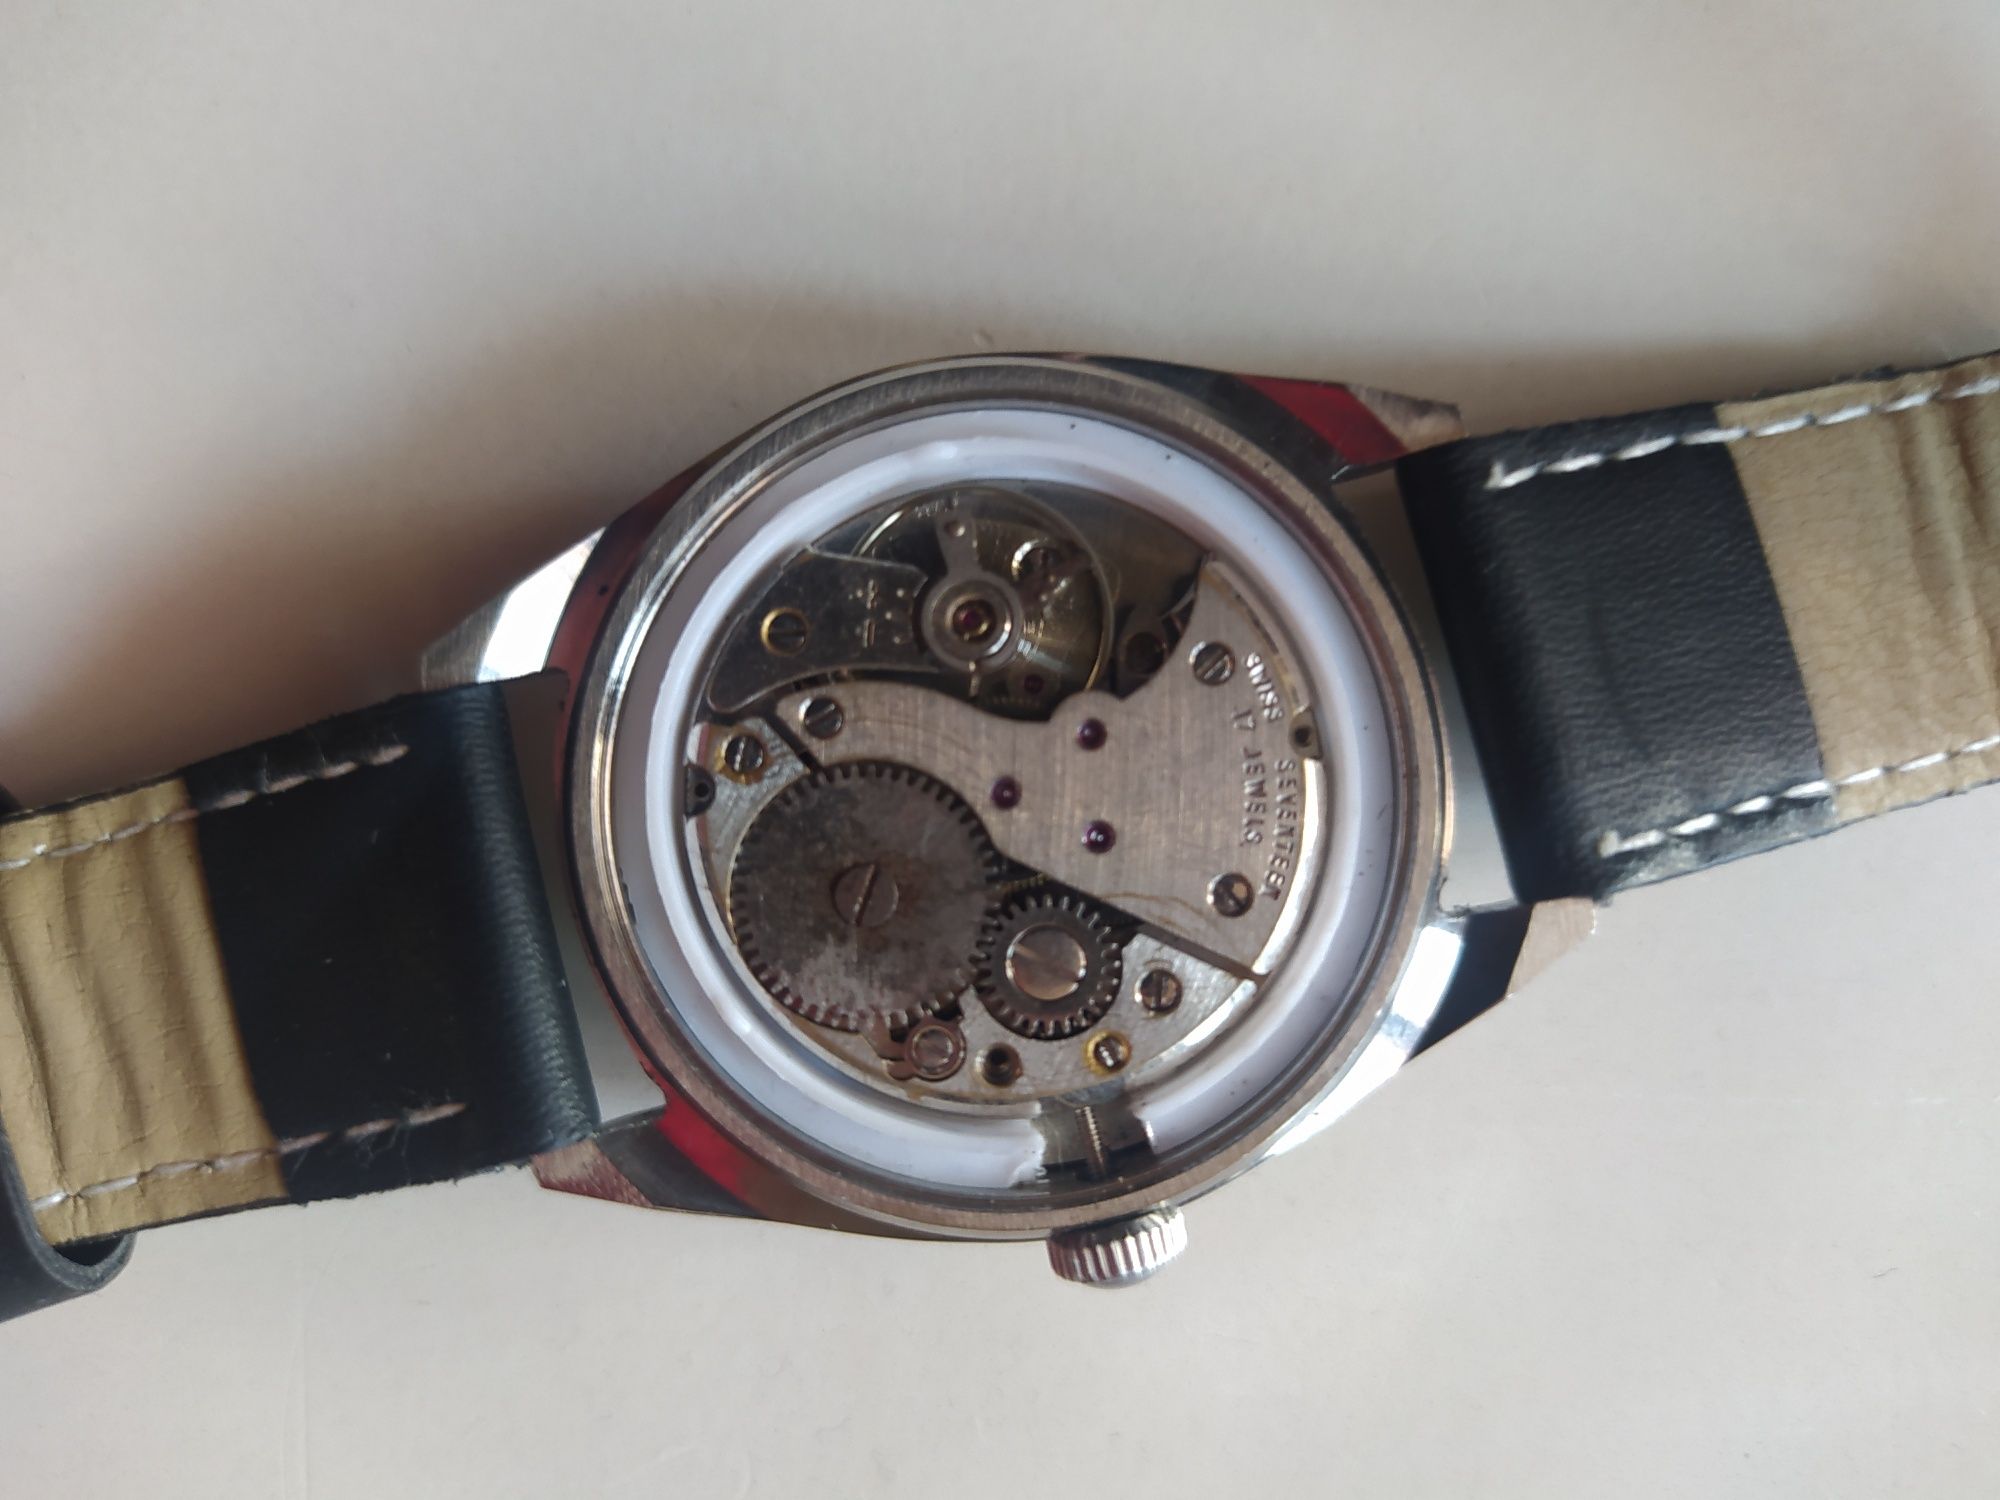 Męski zegarek szwajcarskiej marki Helbros.